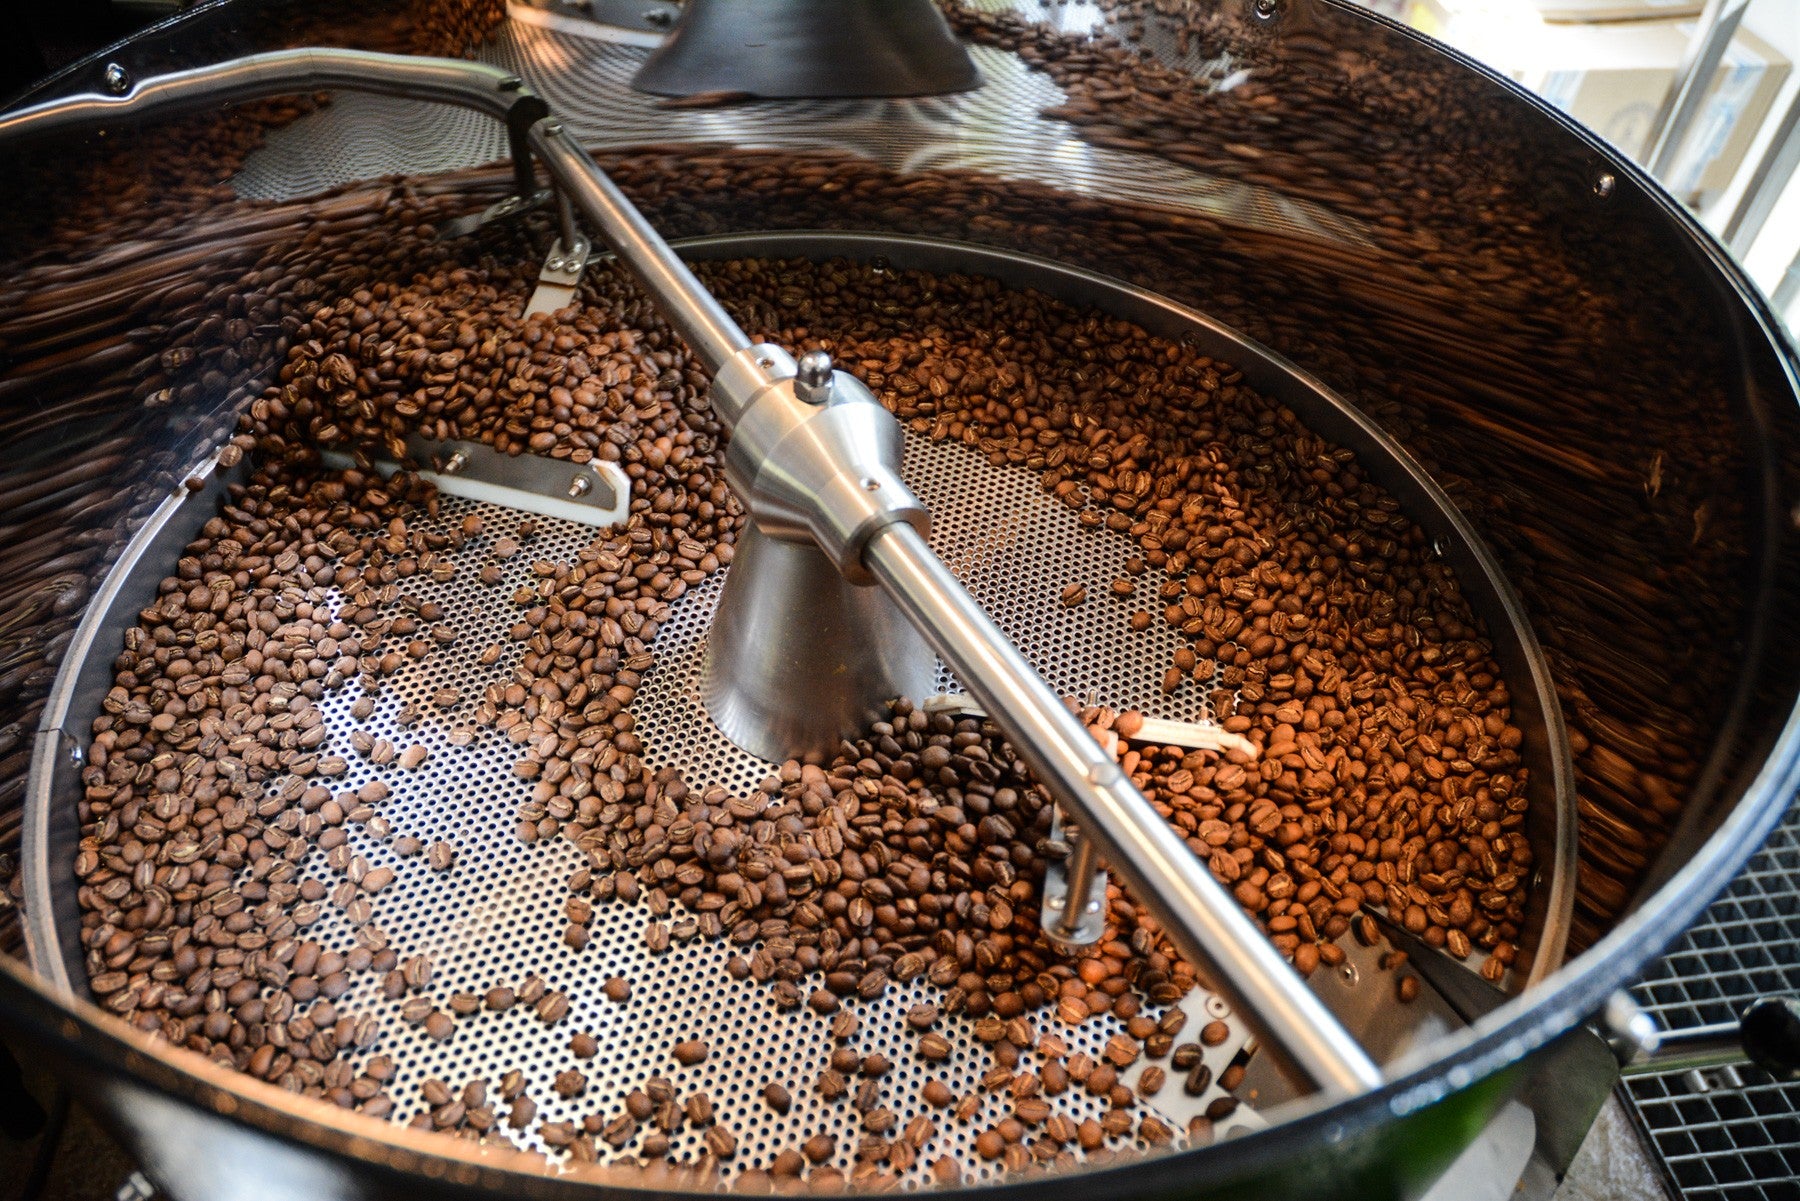 kawa - coffee plant - palarnie kawy